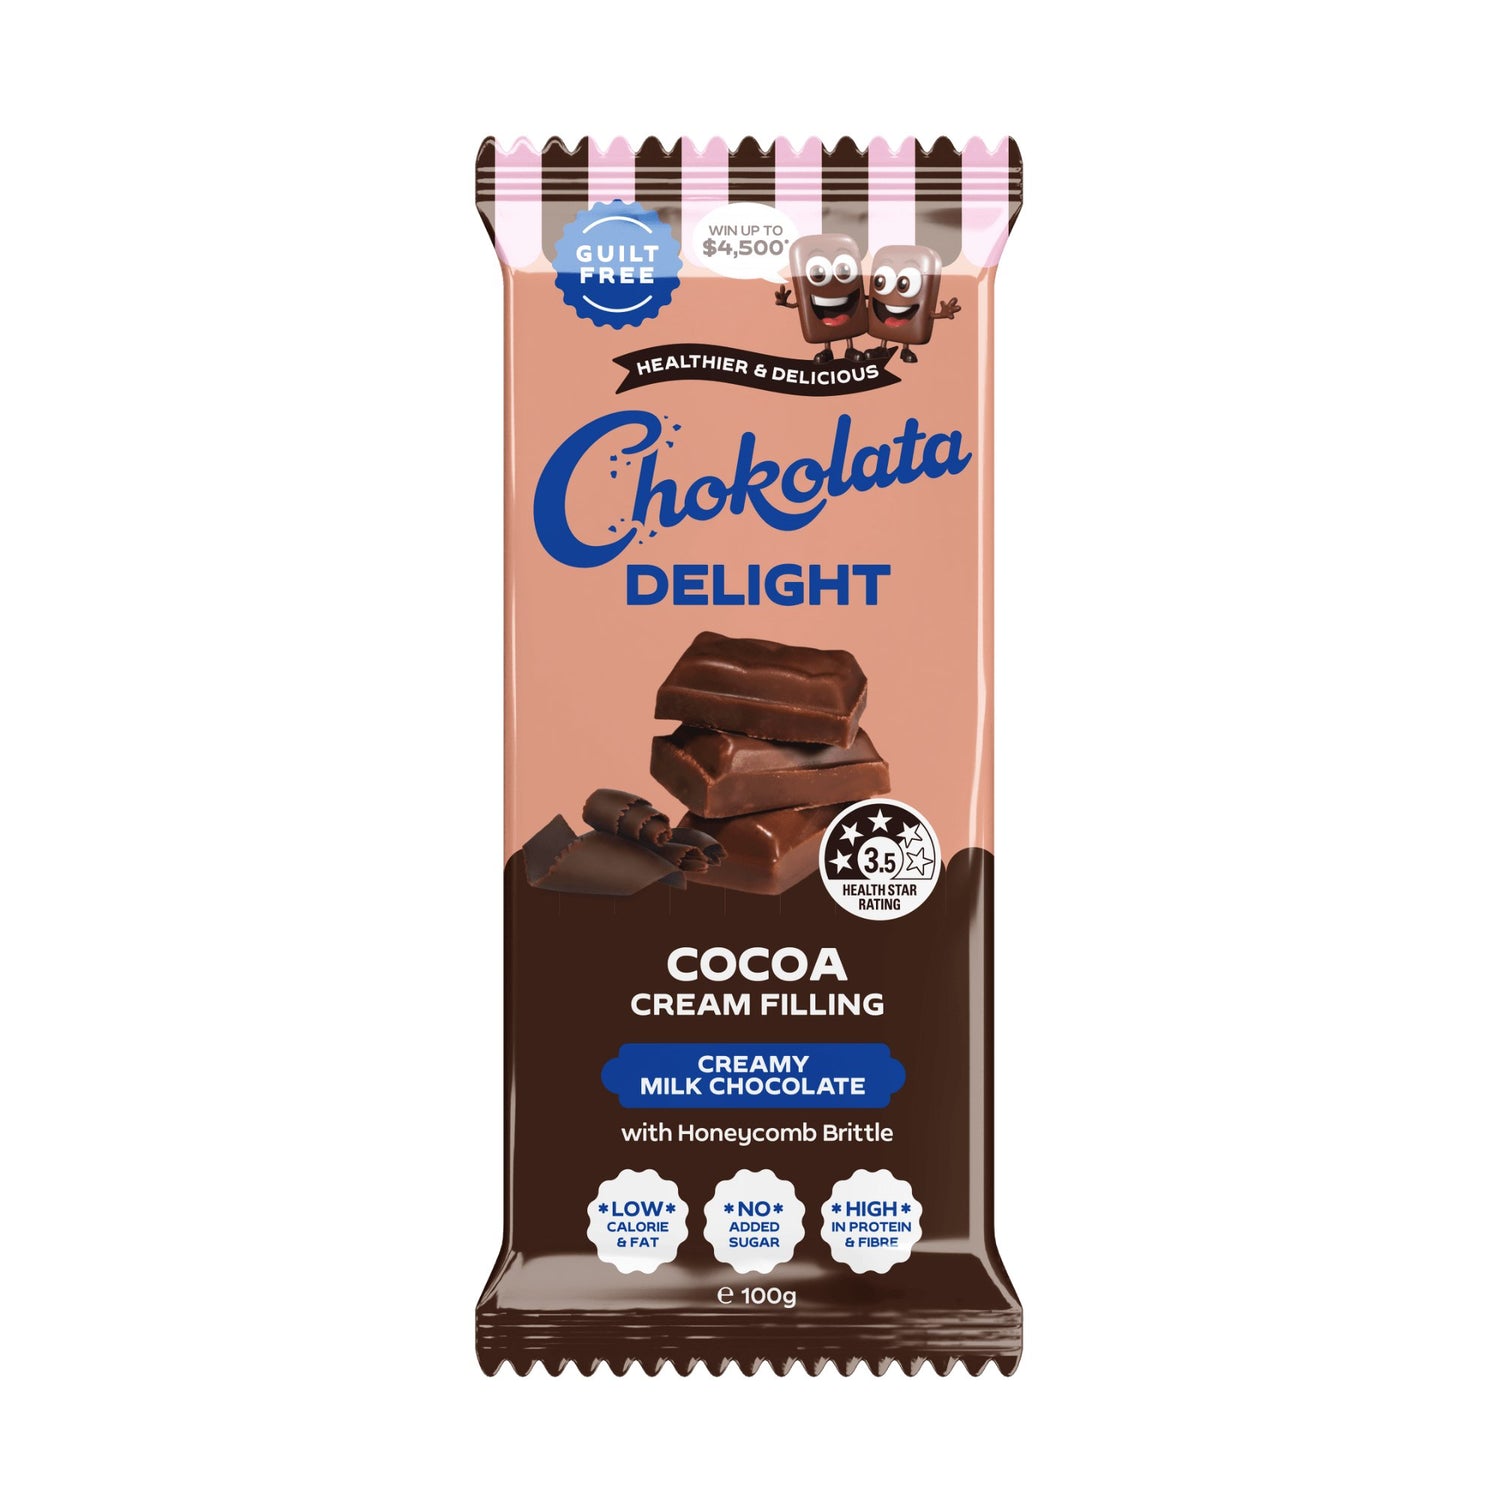 Chokolata Delight 3.5 Milk Cocoa Cream | 100g - Chokolata-Chokolata-chocolate- australian chocolate, australian chocolate brand, australian made chocolate, chocolates shop, australia chocolates, chocolates